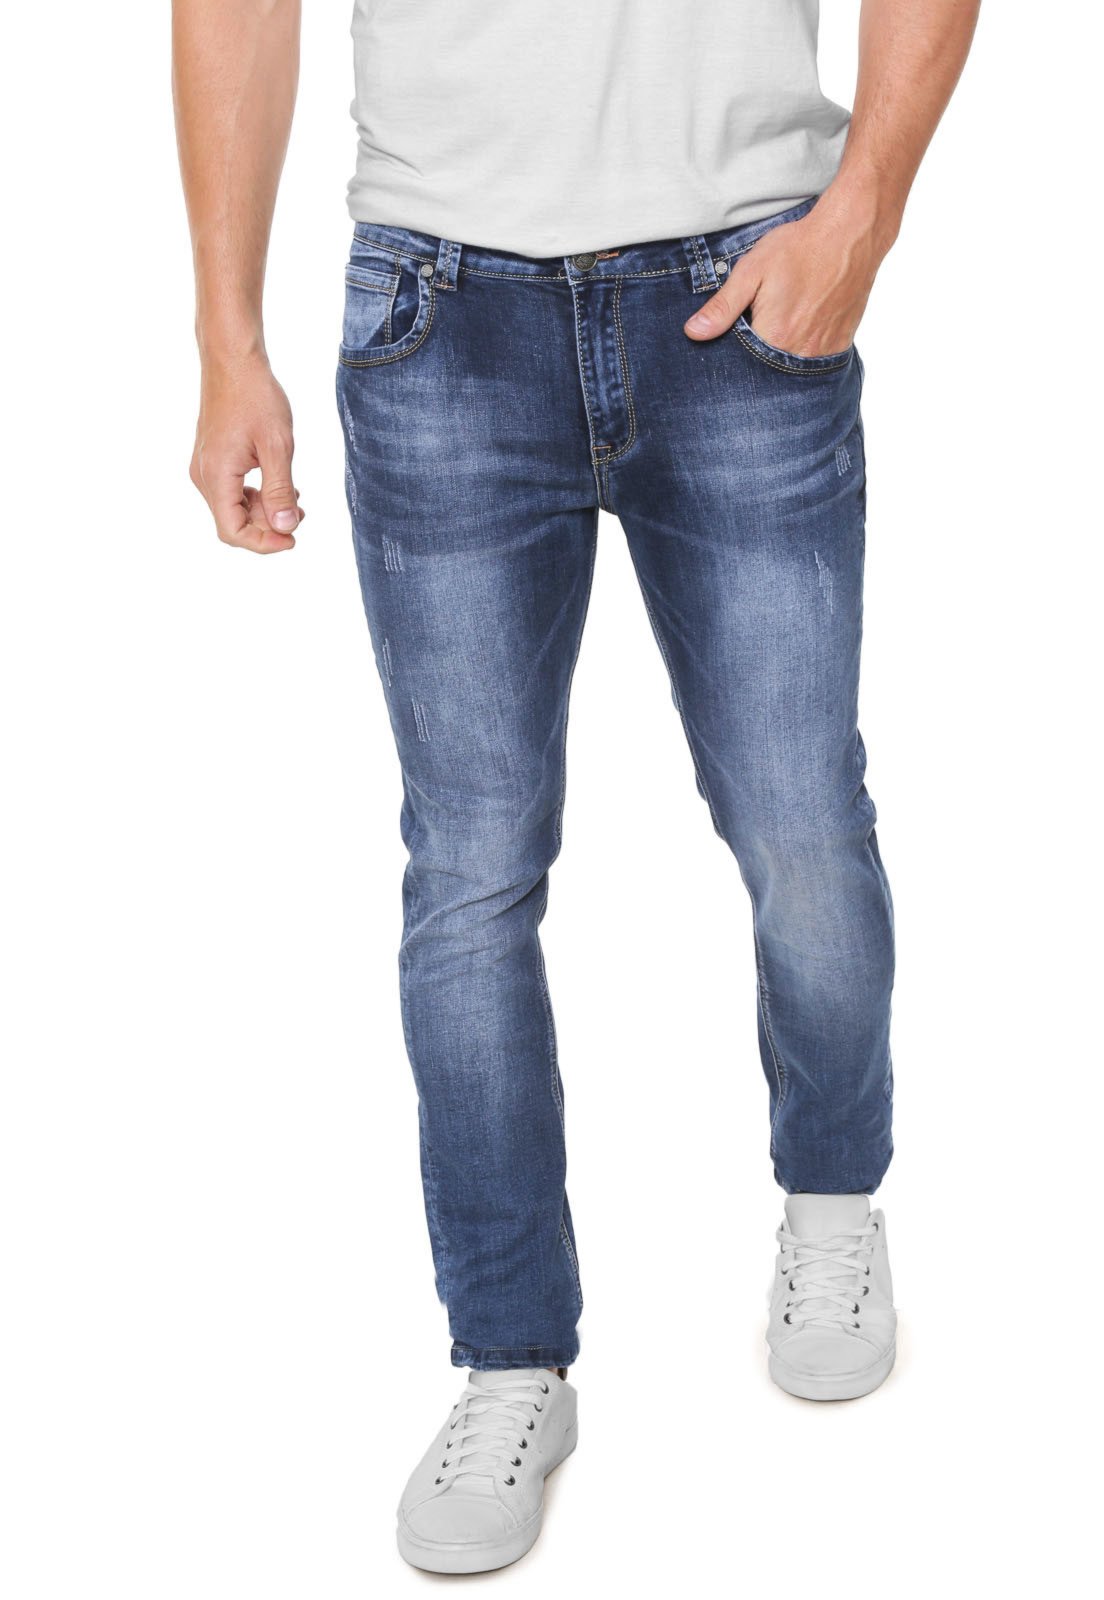 crocker jeans online